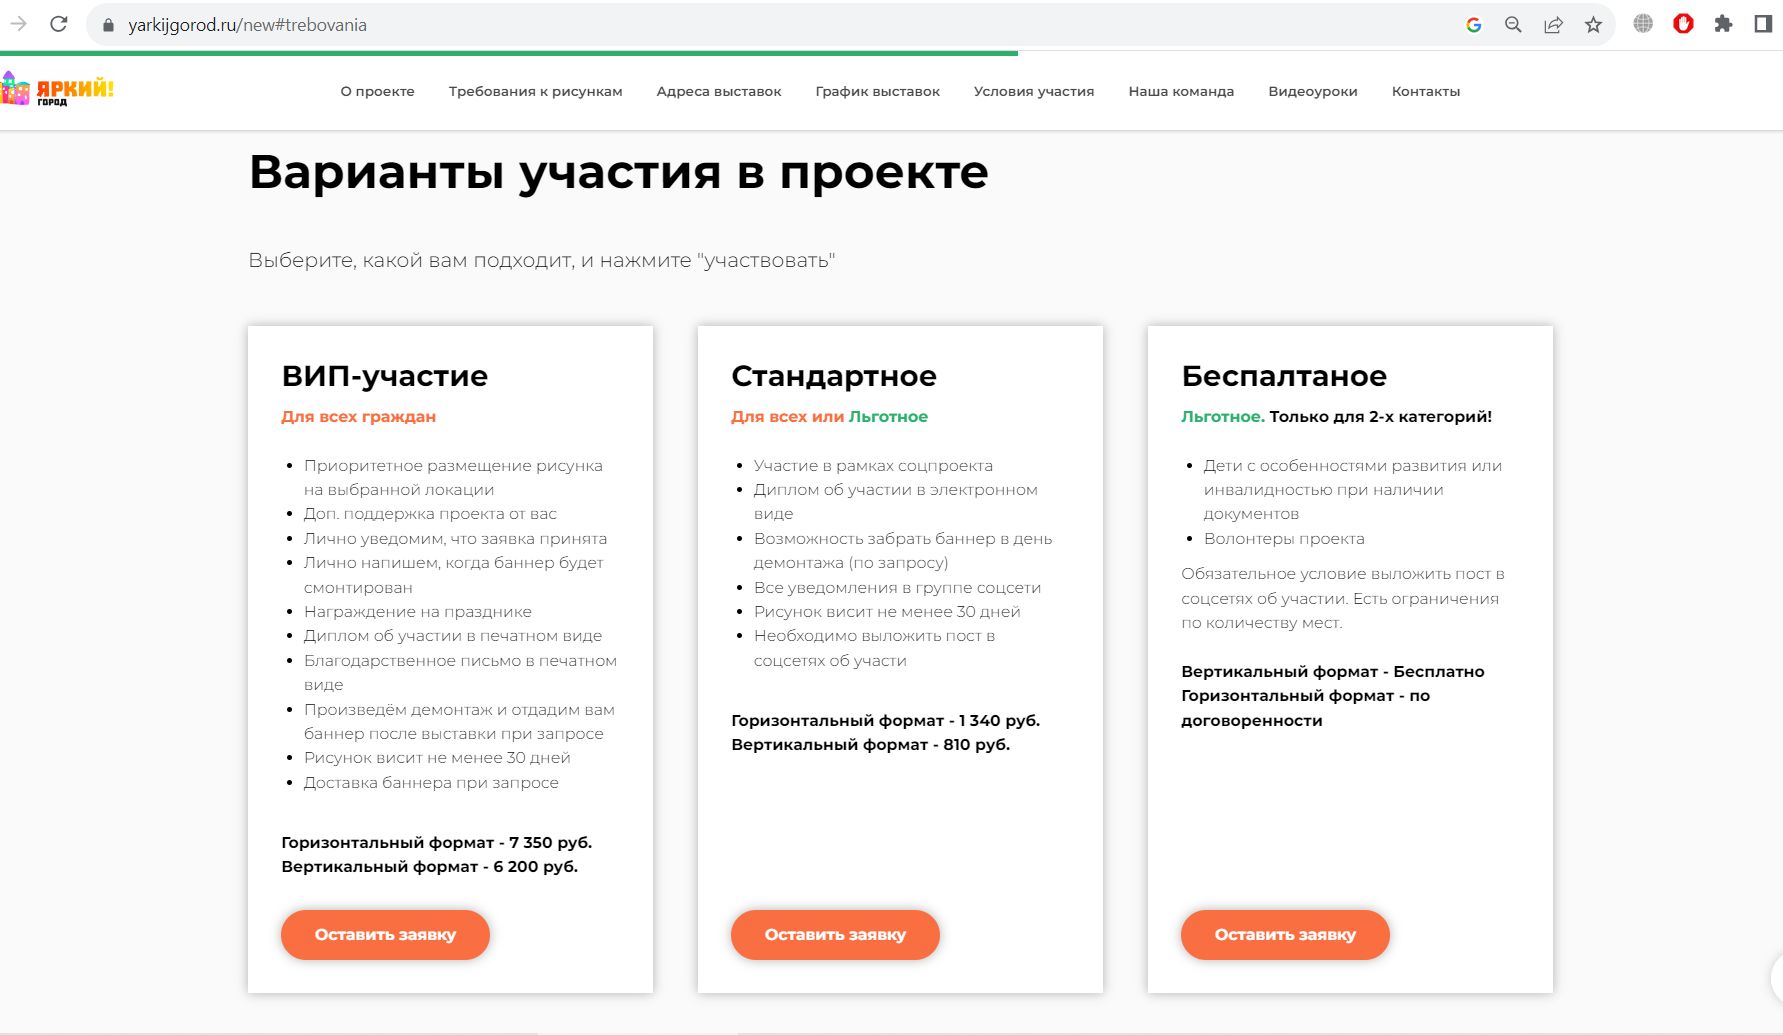 Цены на участие в соцпроекте © Скриншот сайта yarkijgorod.ru